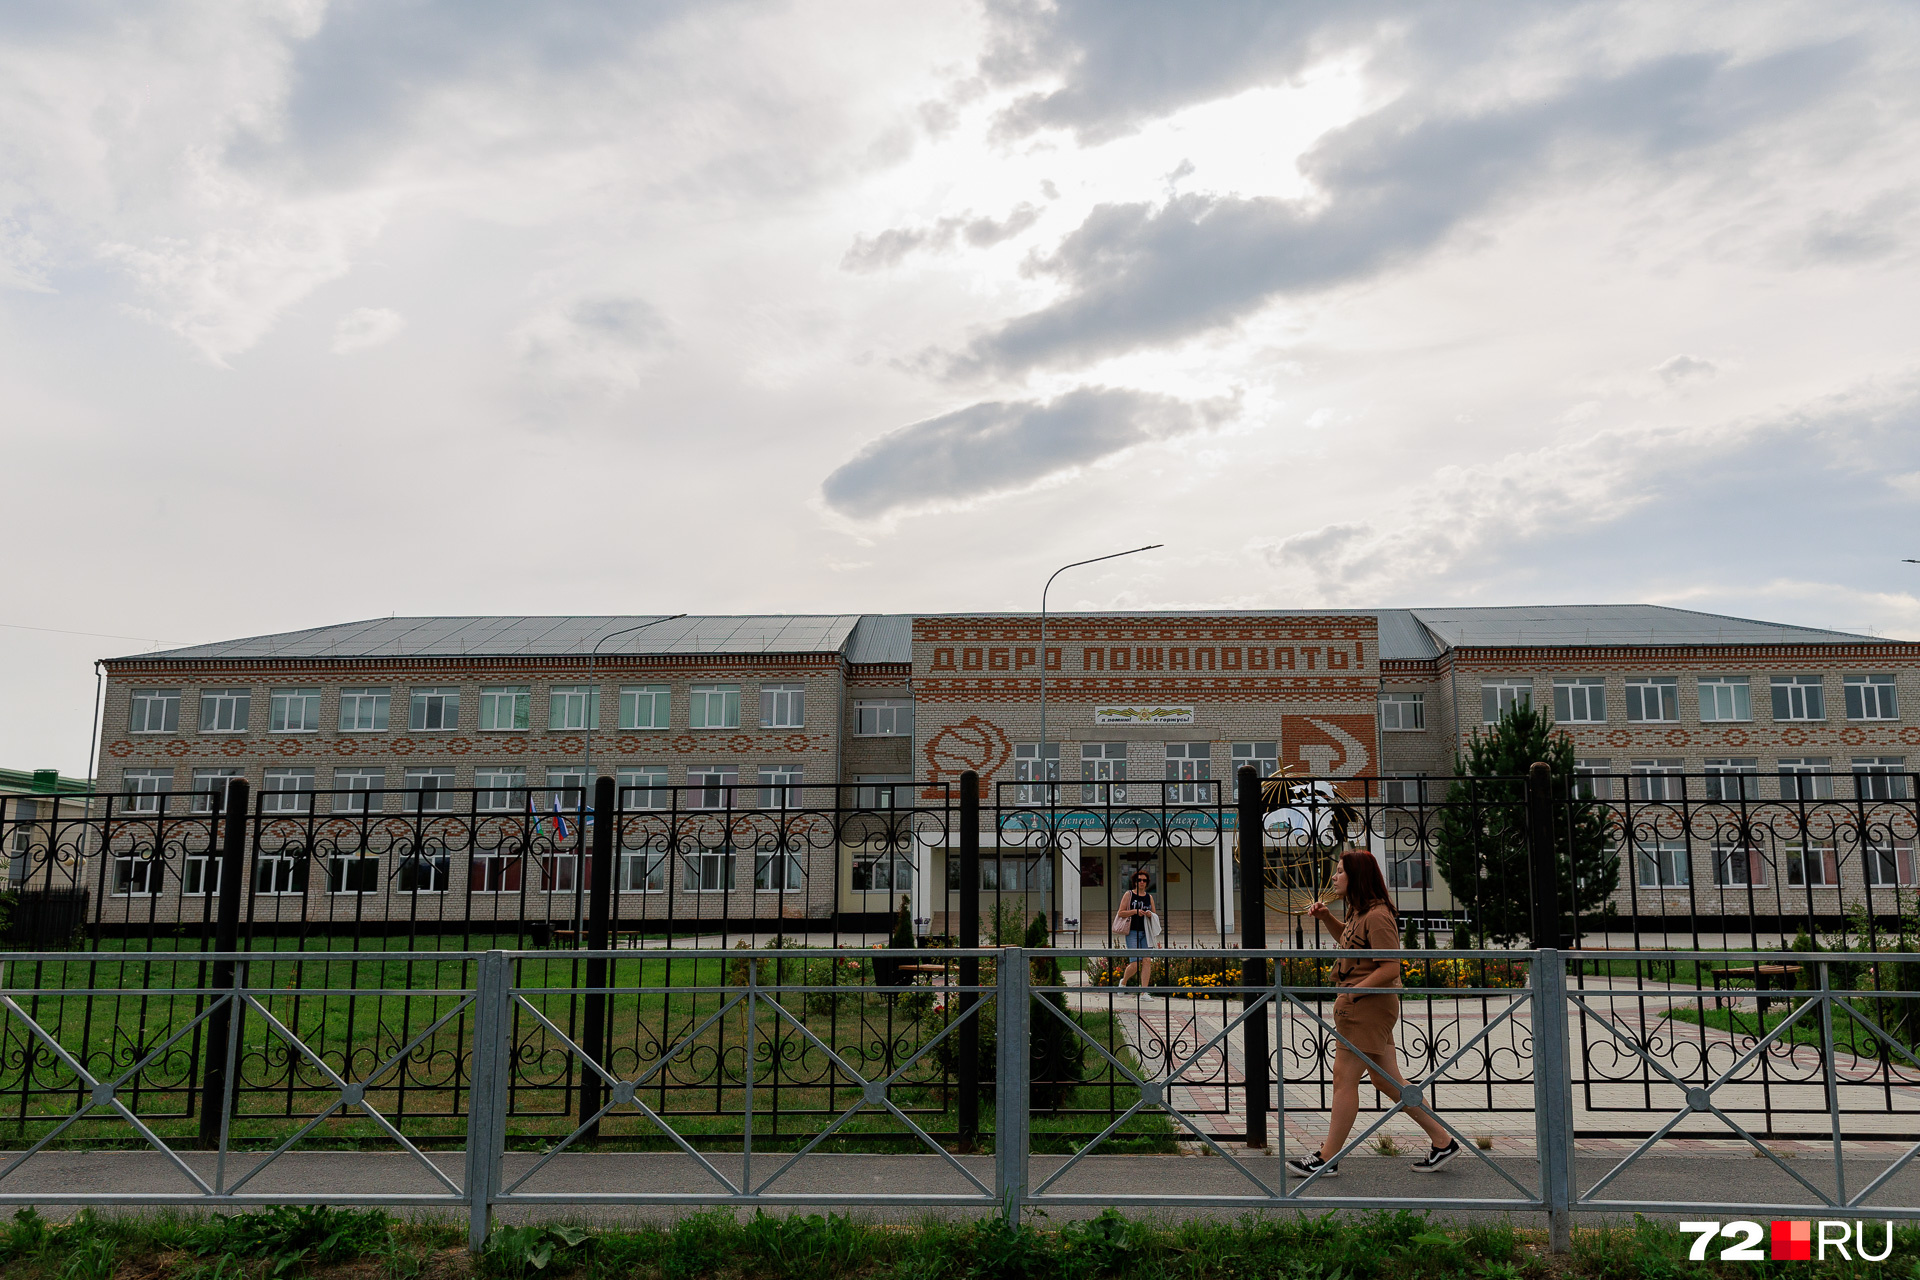 Так выглядит одна из школ. С налетом Советского Союза